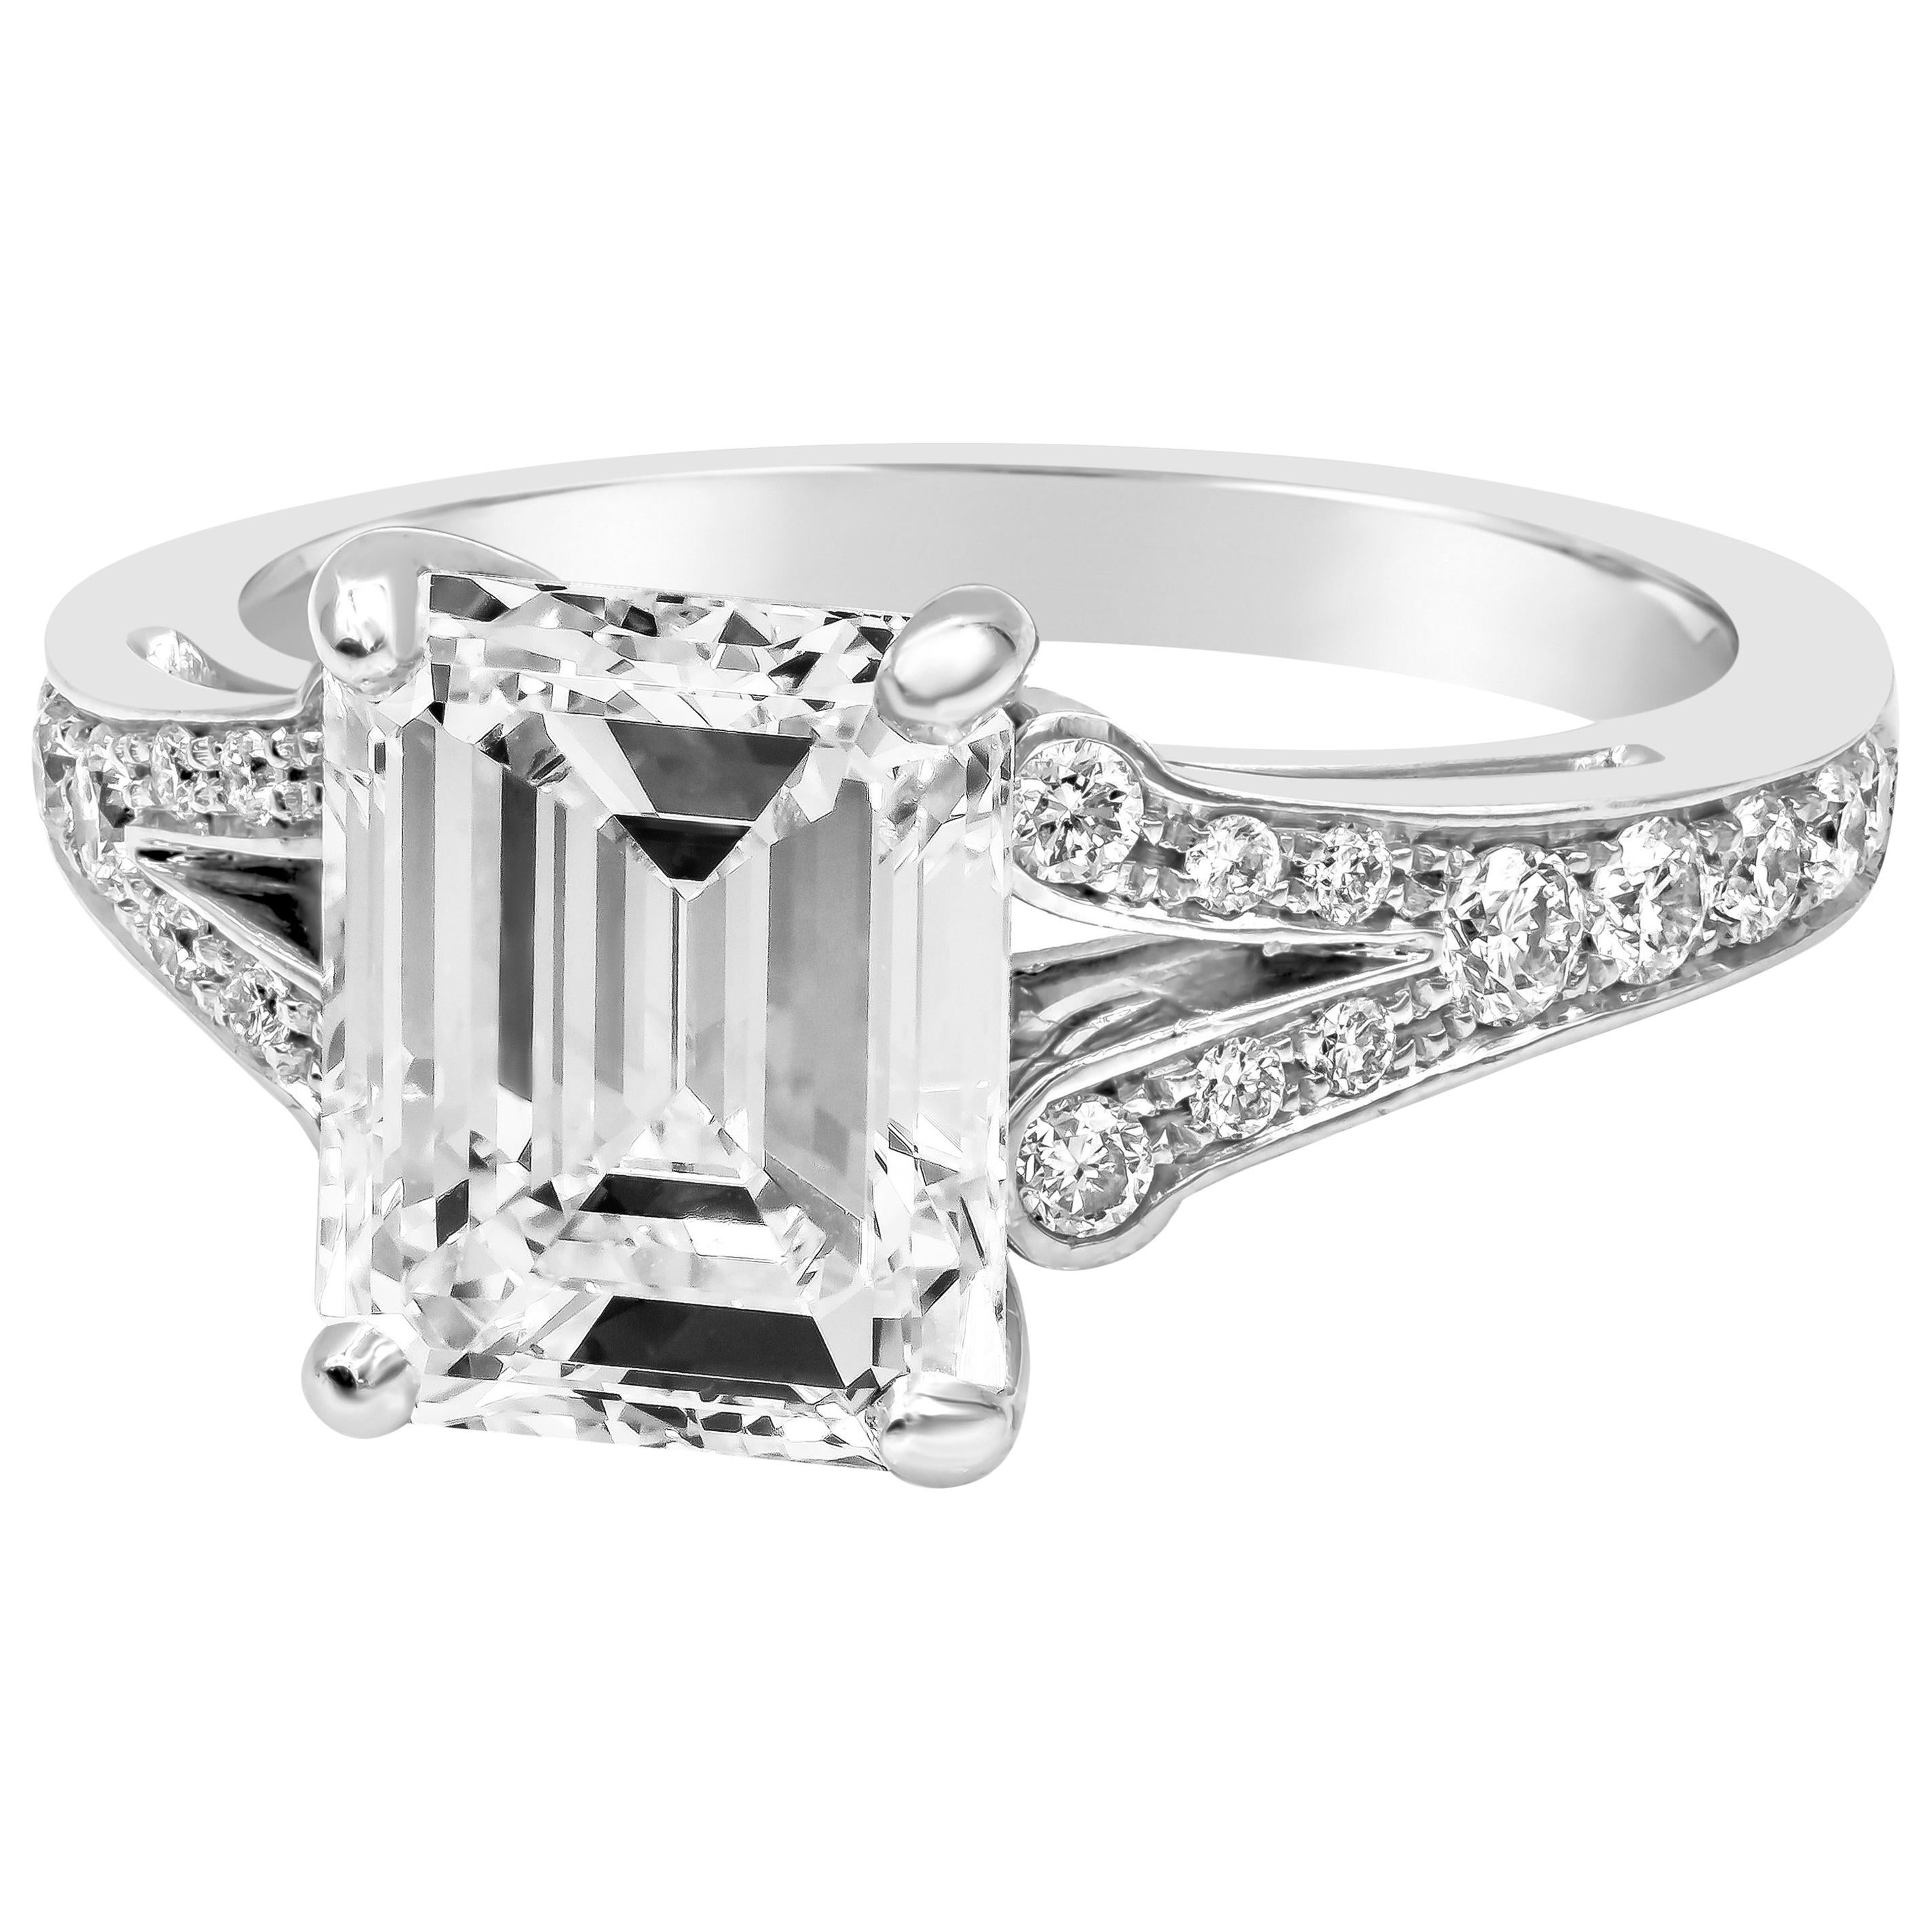 Elle présente un diamant de 3,01 carats de taille émeraude certifié par la GIA de couleur E et de pureté VS2, serti dans une monture en platine à deux branches accentuée par des diamants ronds de taille brillant de chaque côté. Les diamants